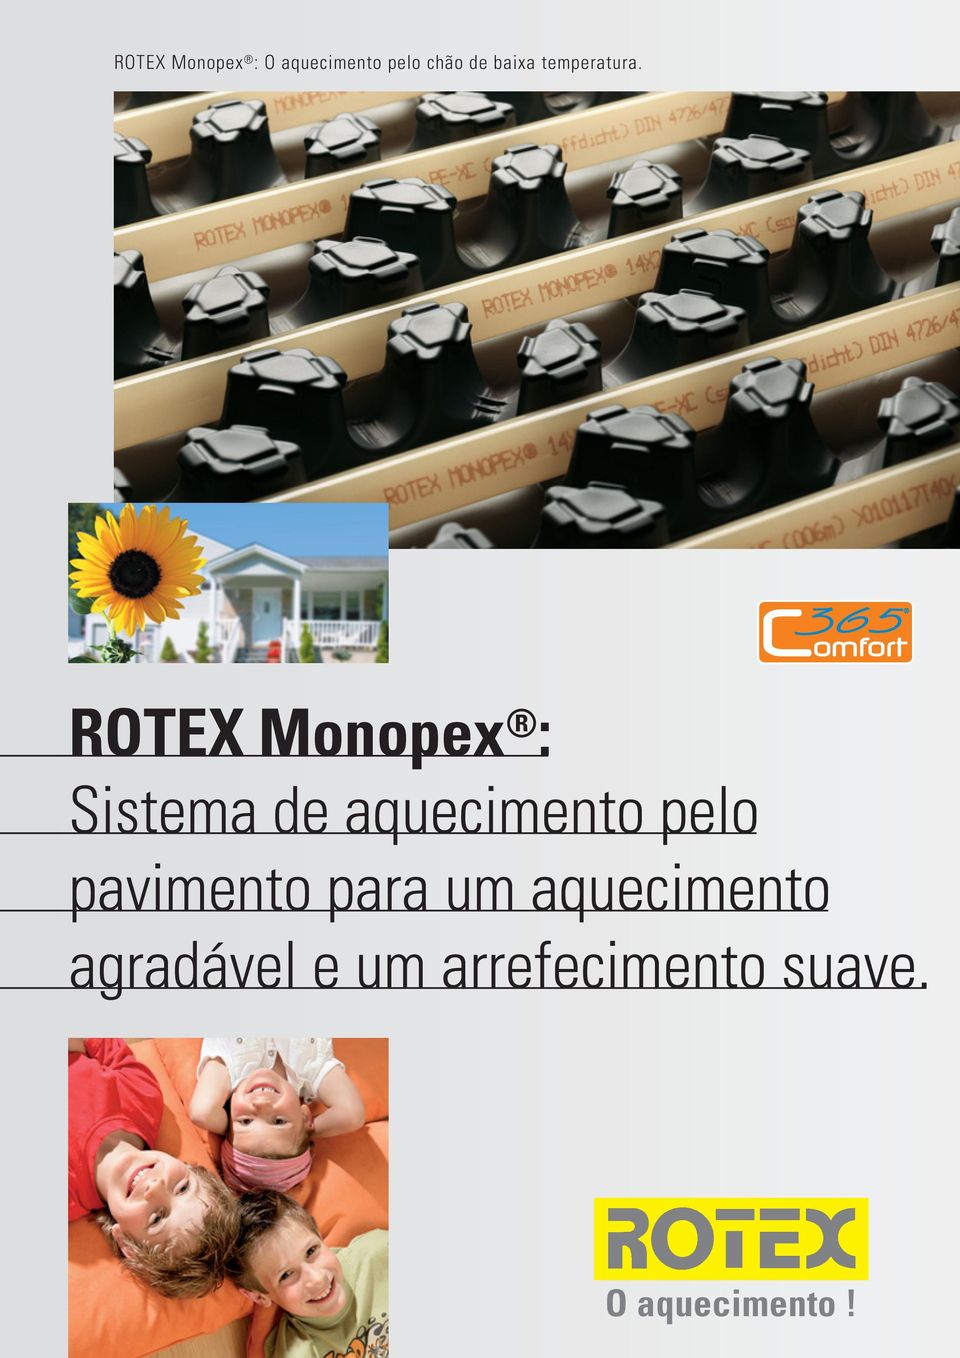 ROTEX Monopex : Sistema de aquecimento pelo